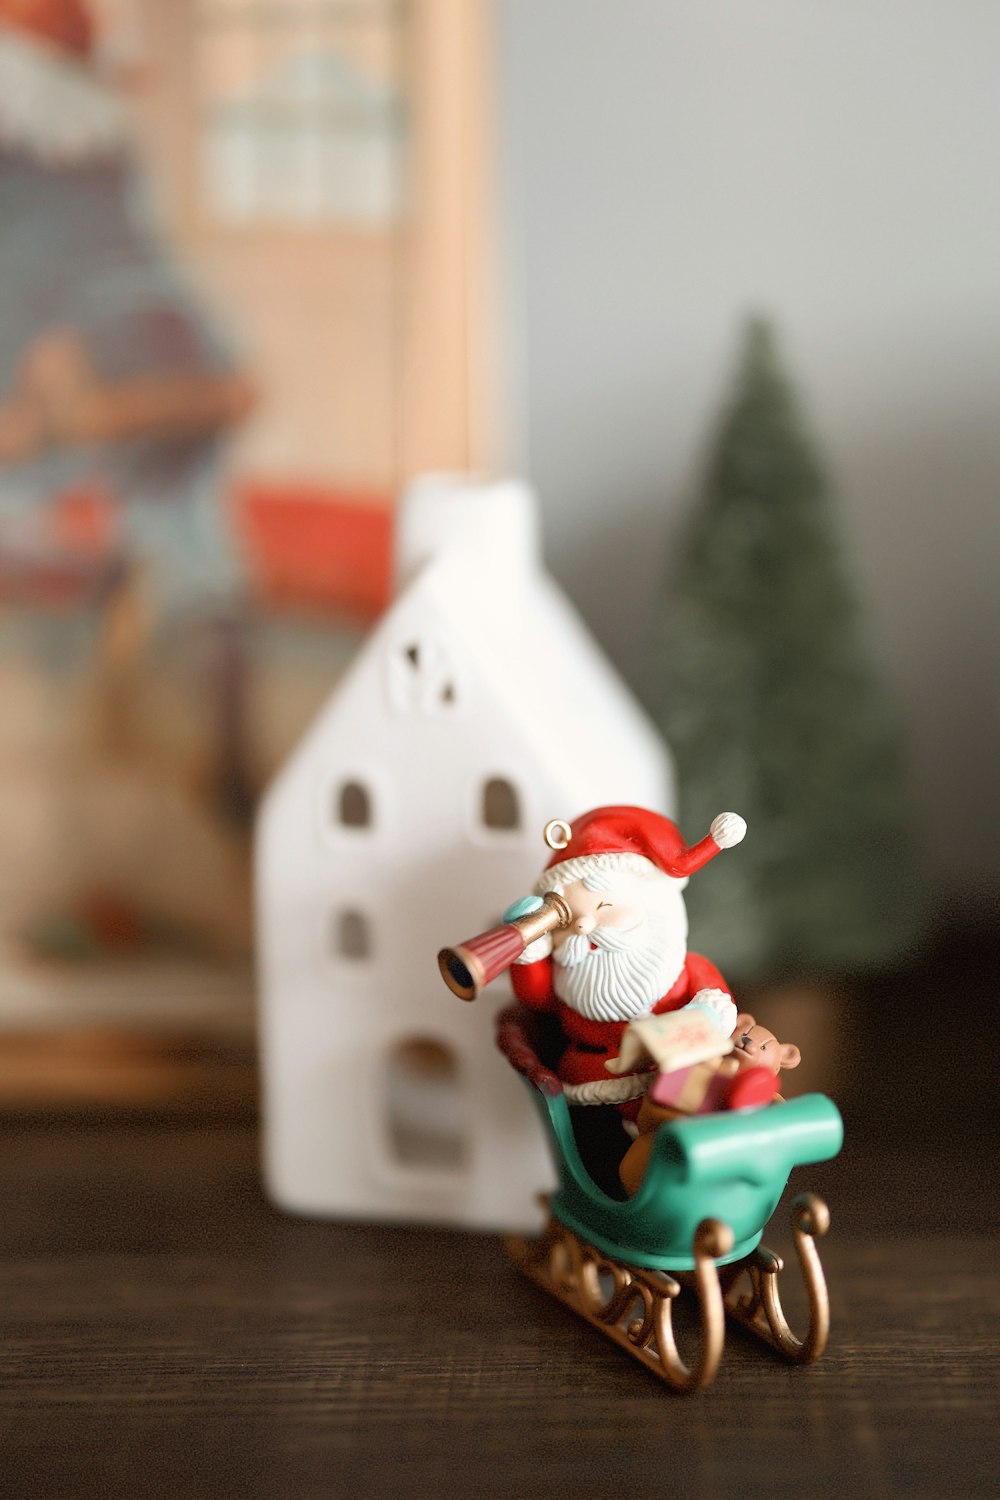 a figurine of a santa clause riding a sleigh